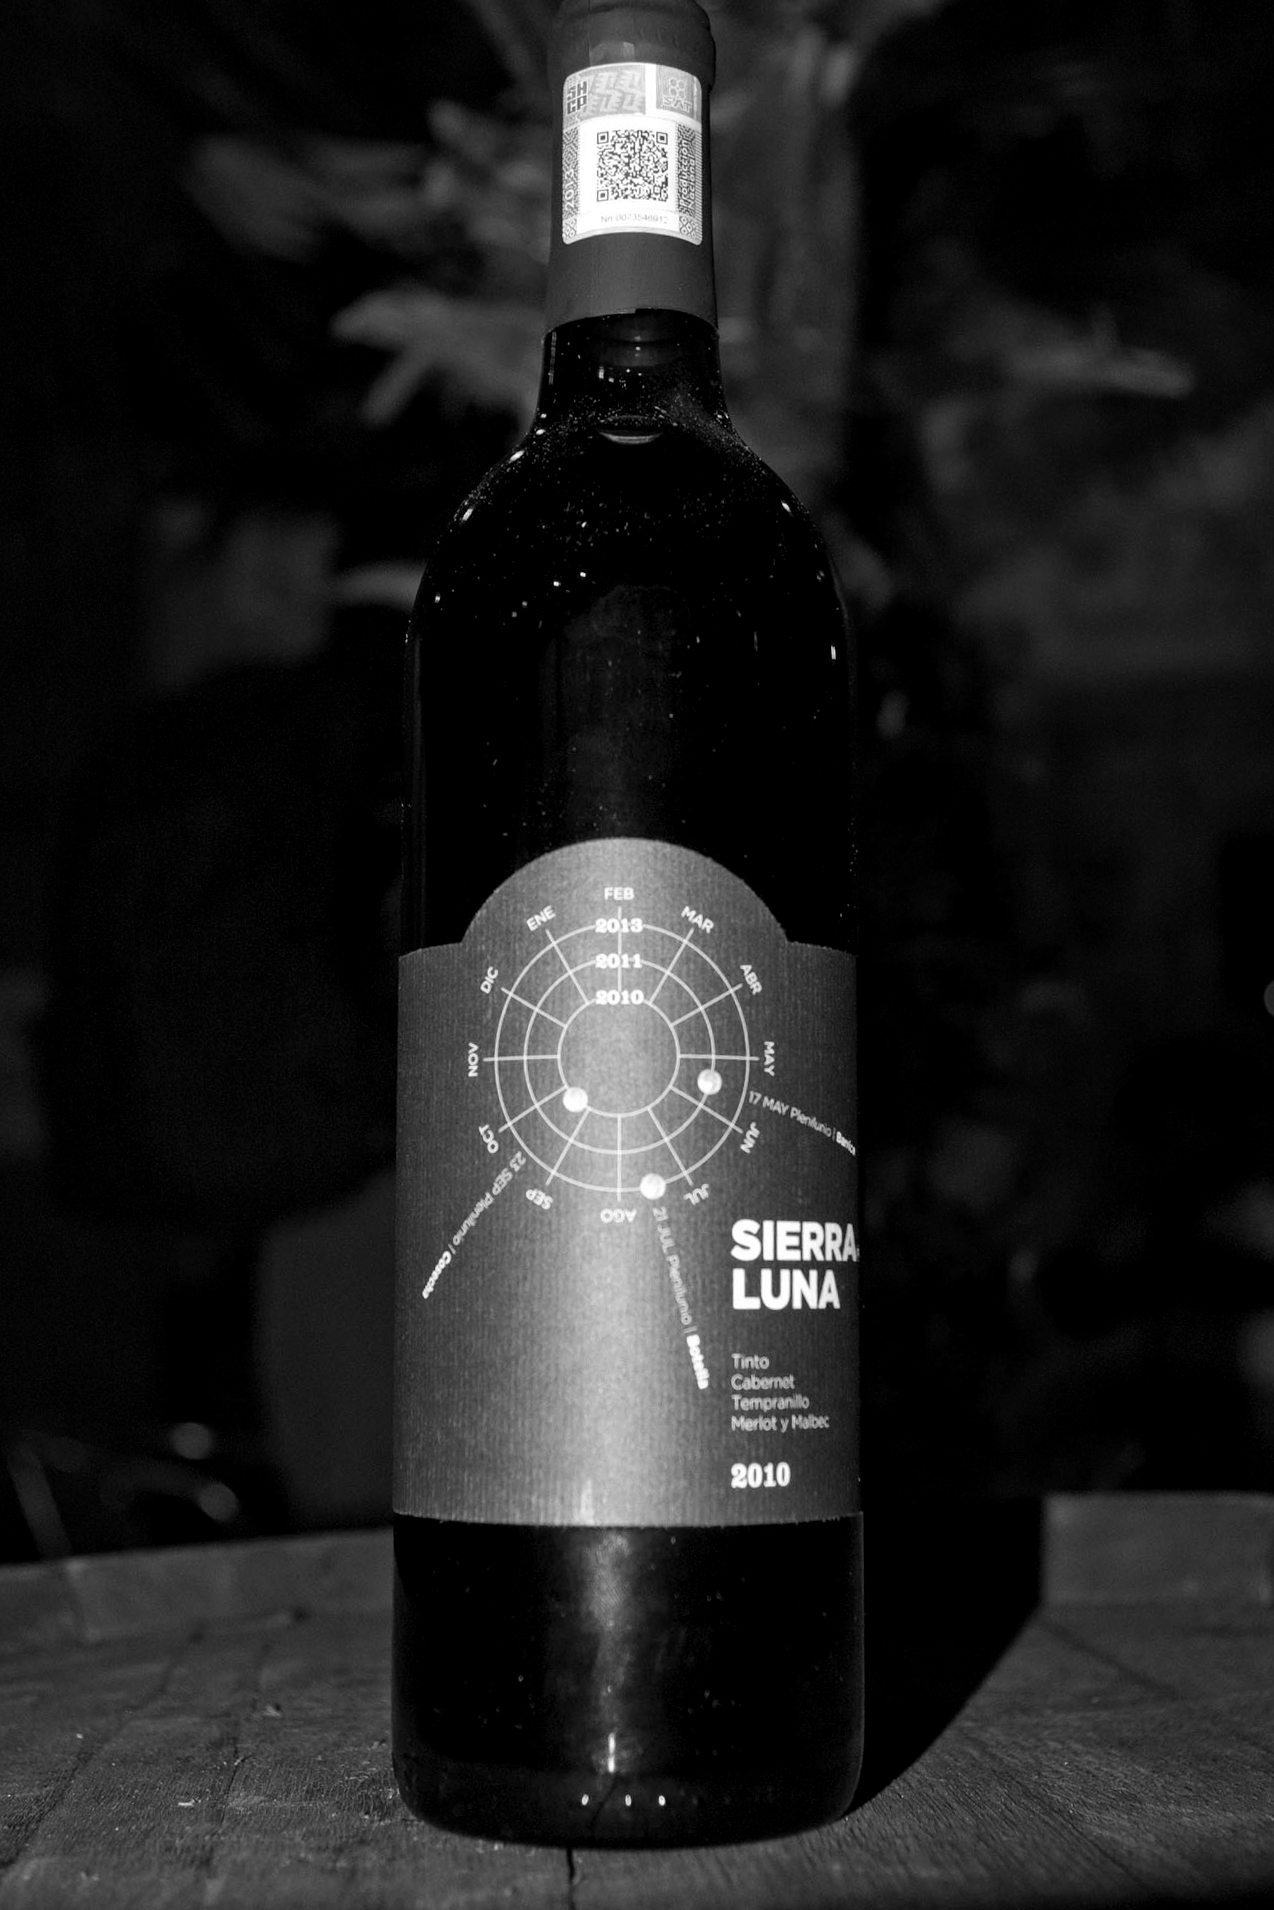 Presentacion del Vino Sierra de Luna